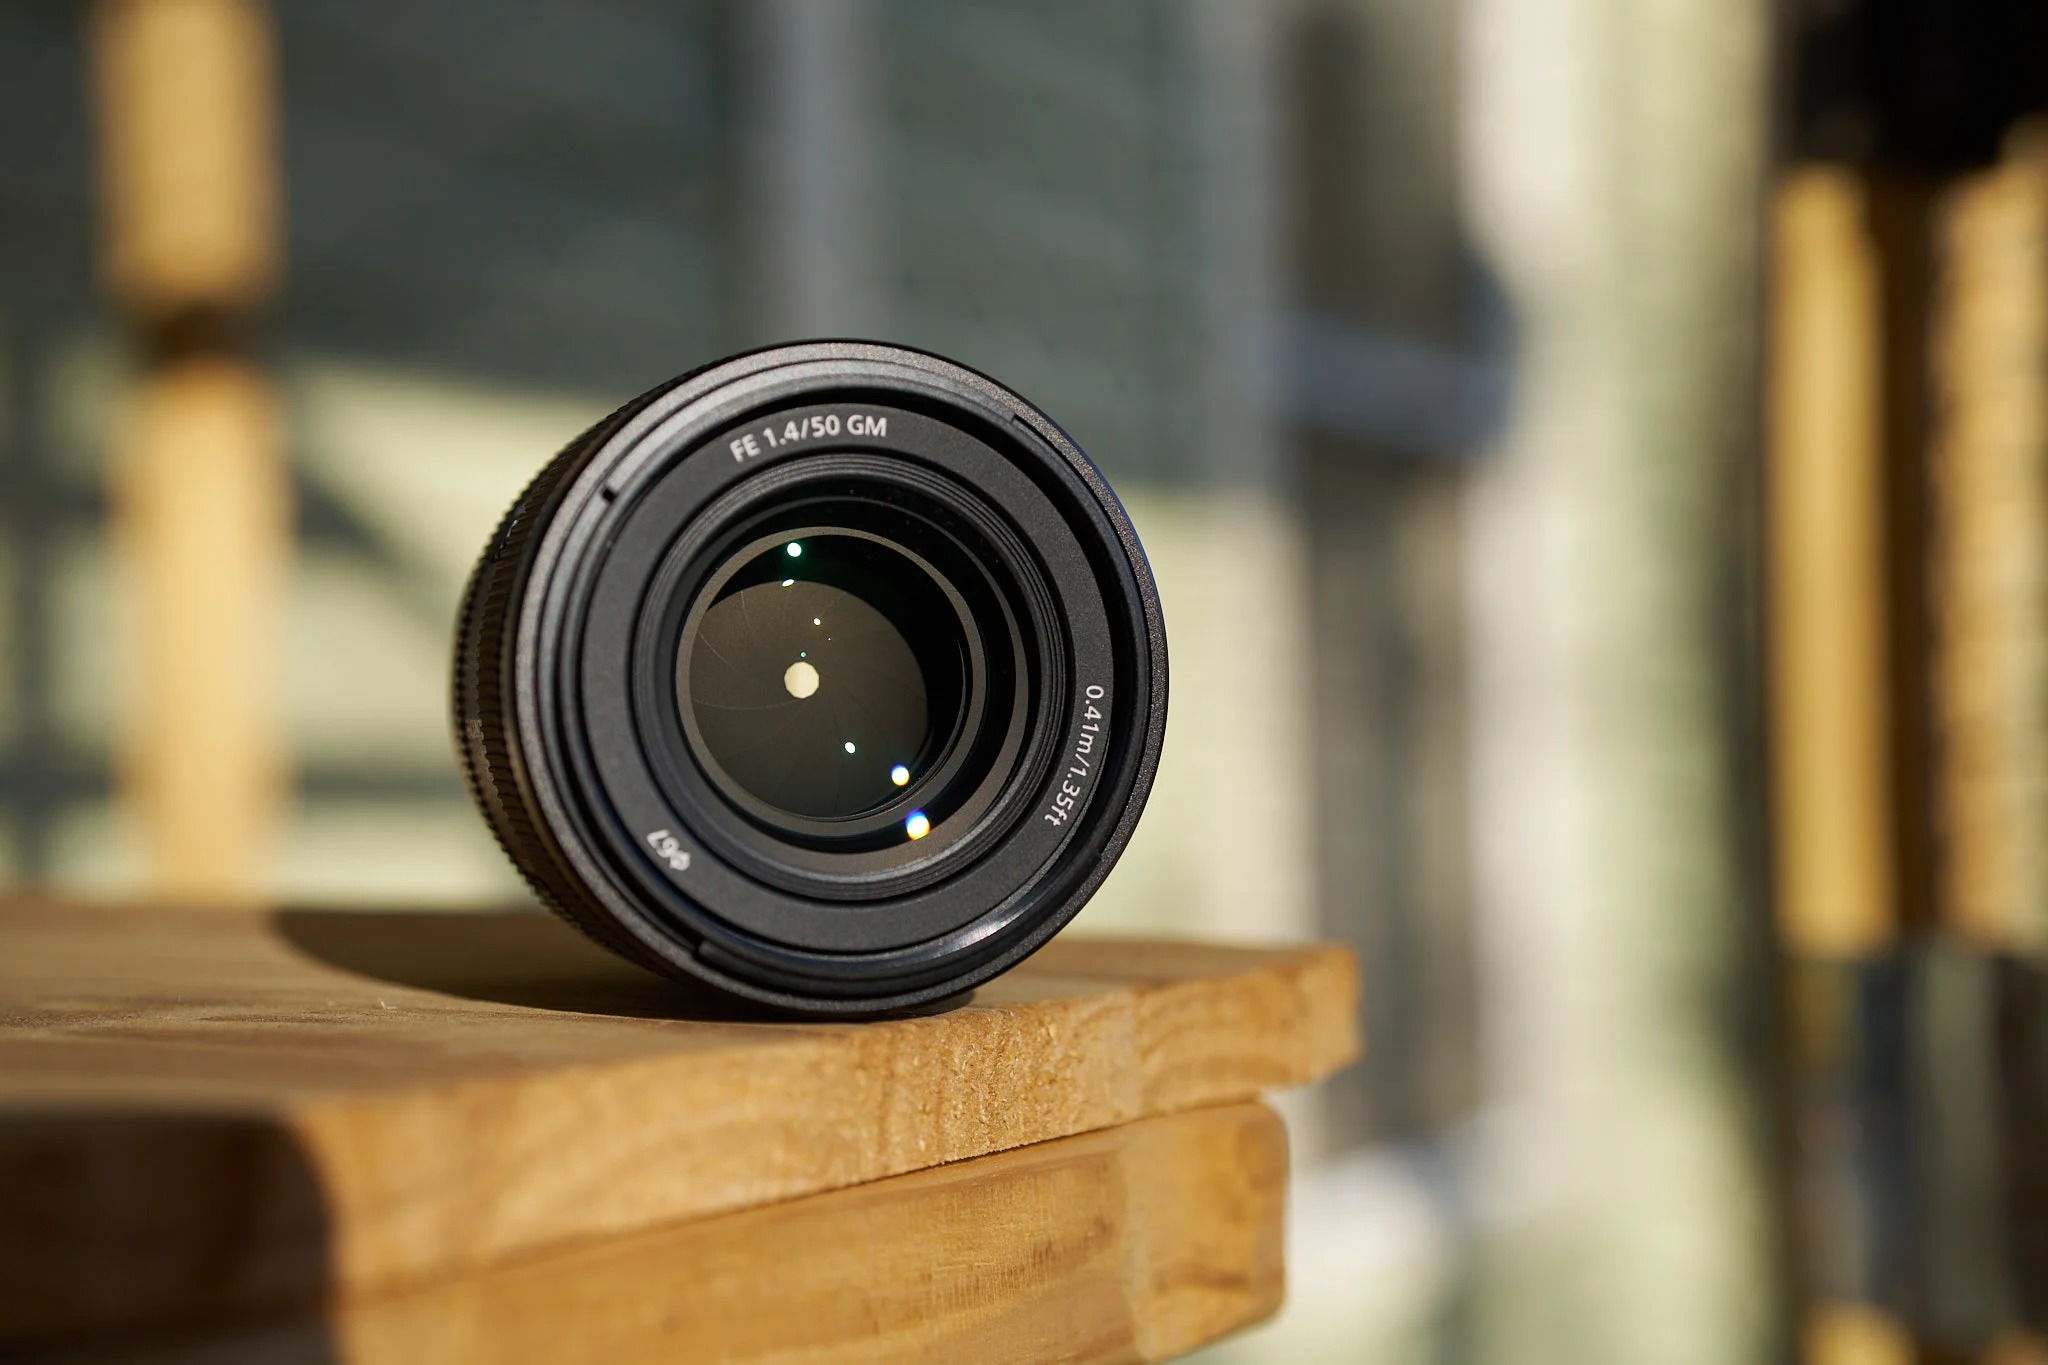 Sony ra mắt ống kính FE 50mm F1.4 GM mới với kích thước nhỏ gọn và trọng lượng nhẹ nhất trong phân khúc